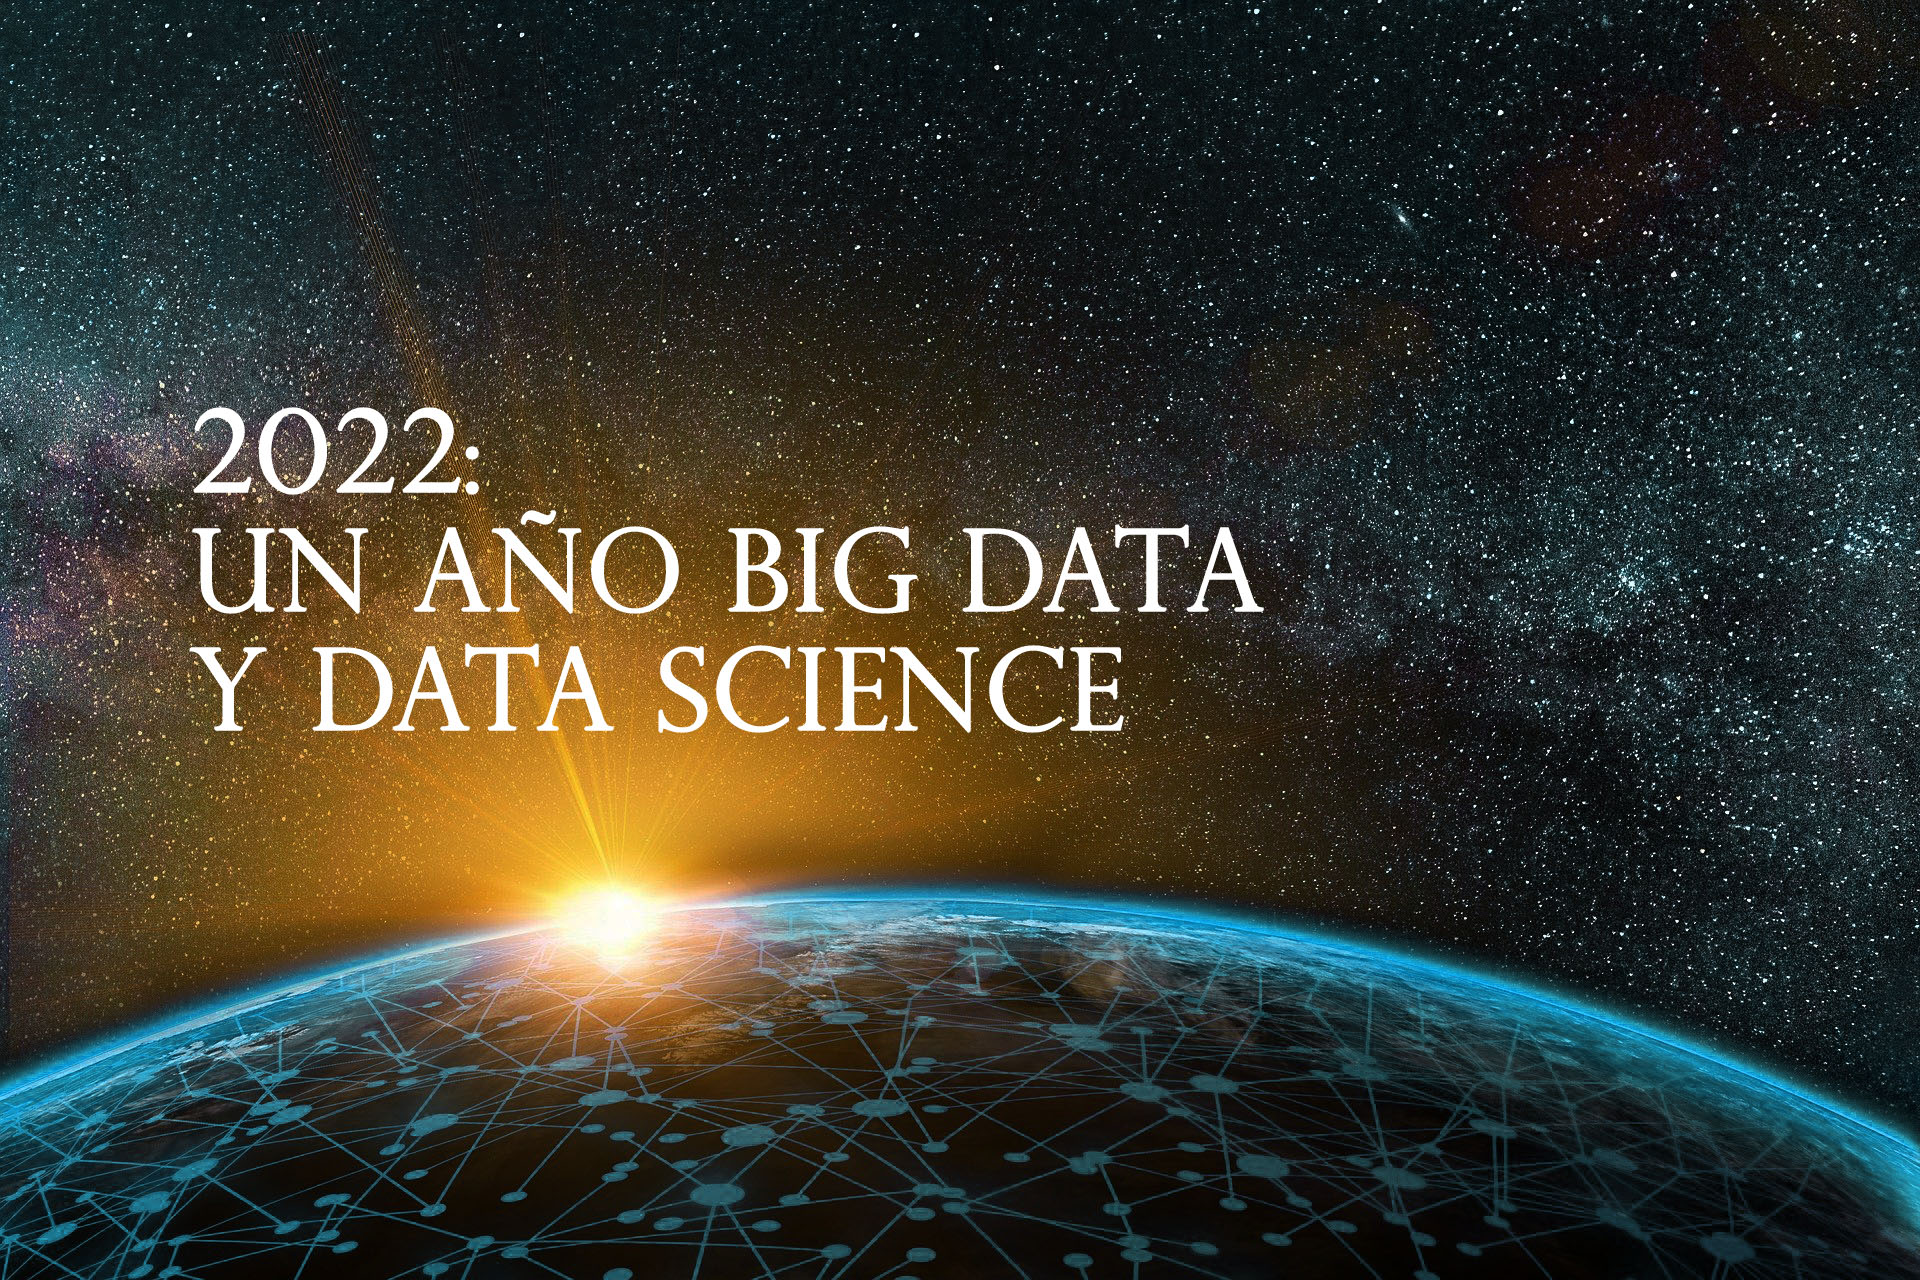 2022: UN AÑO BIG DATA Y DATA SCIENCE